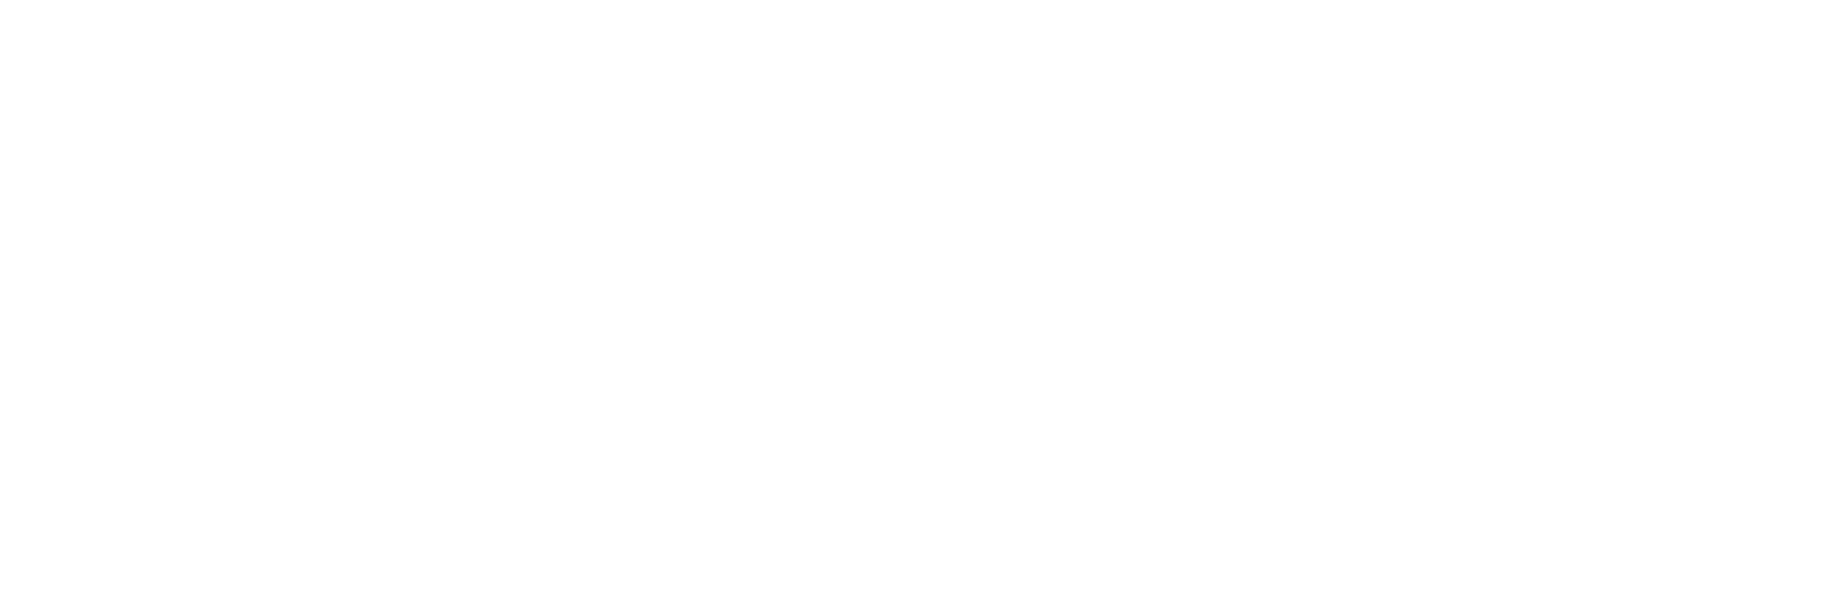 Indigo Ag